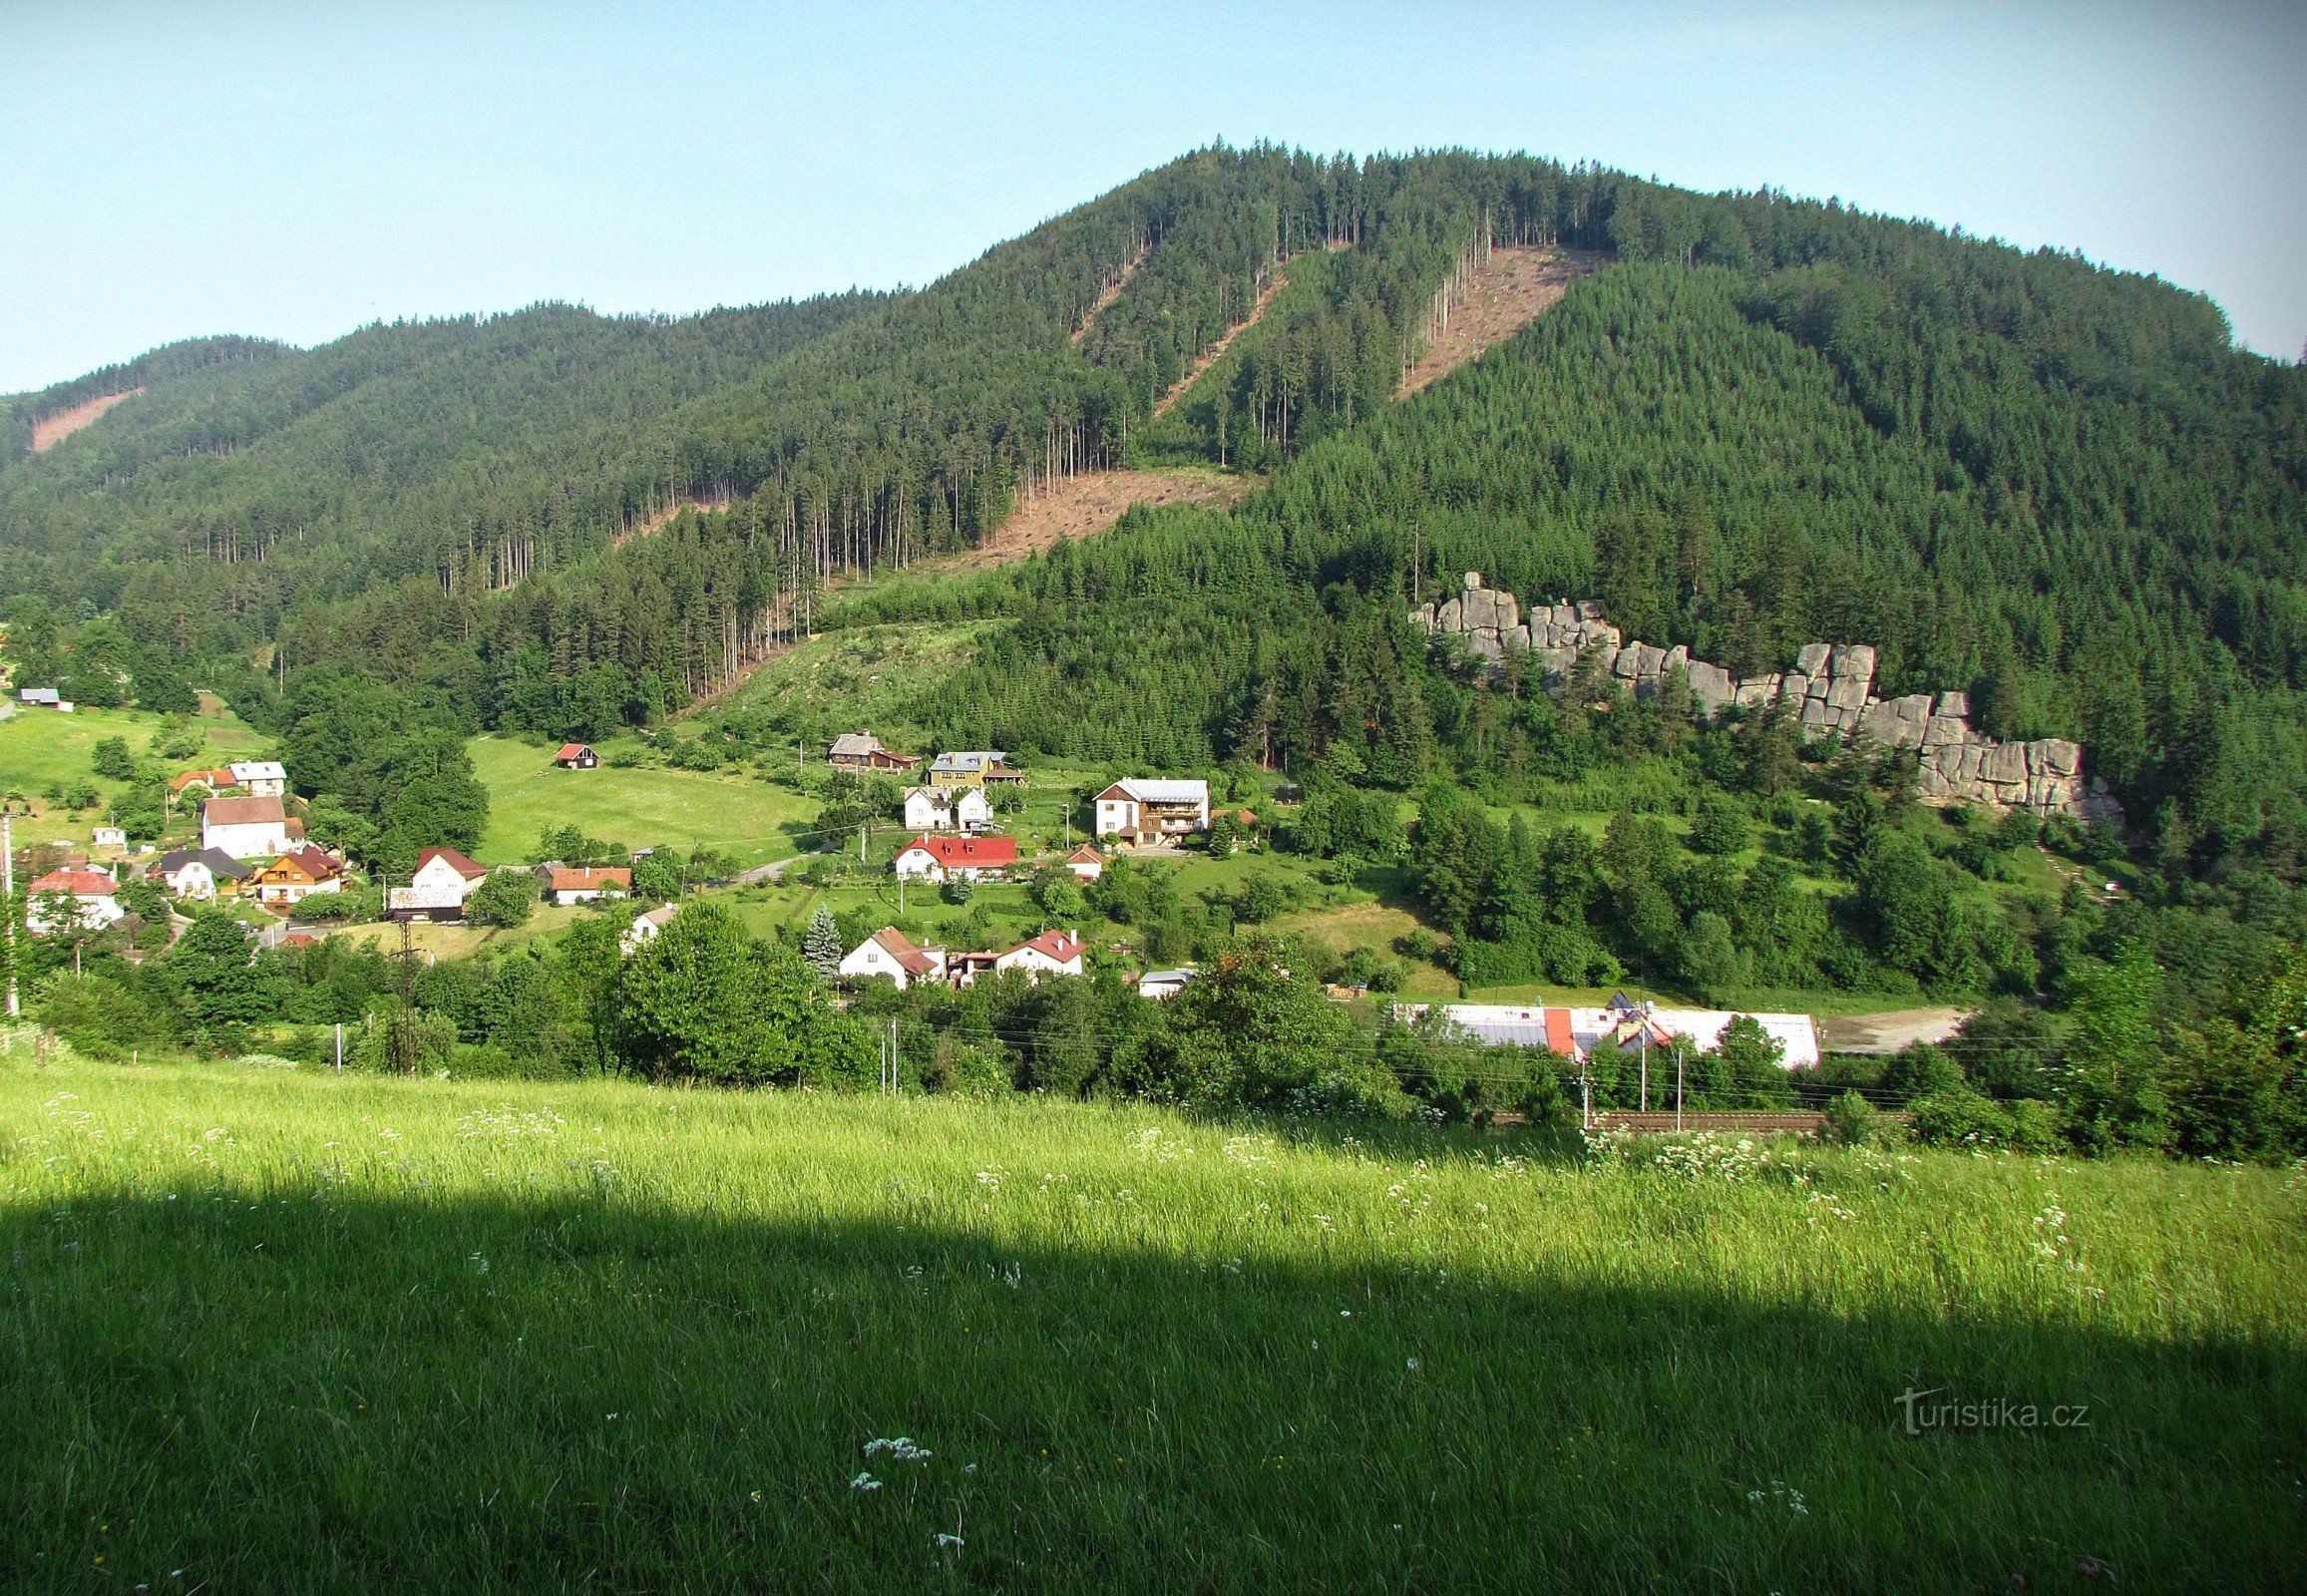 Hügel im Jahr 2012